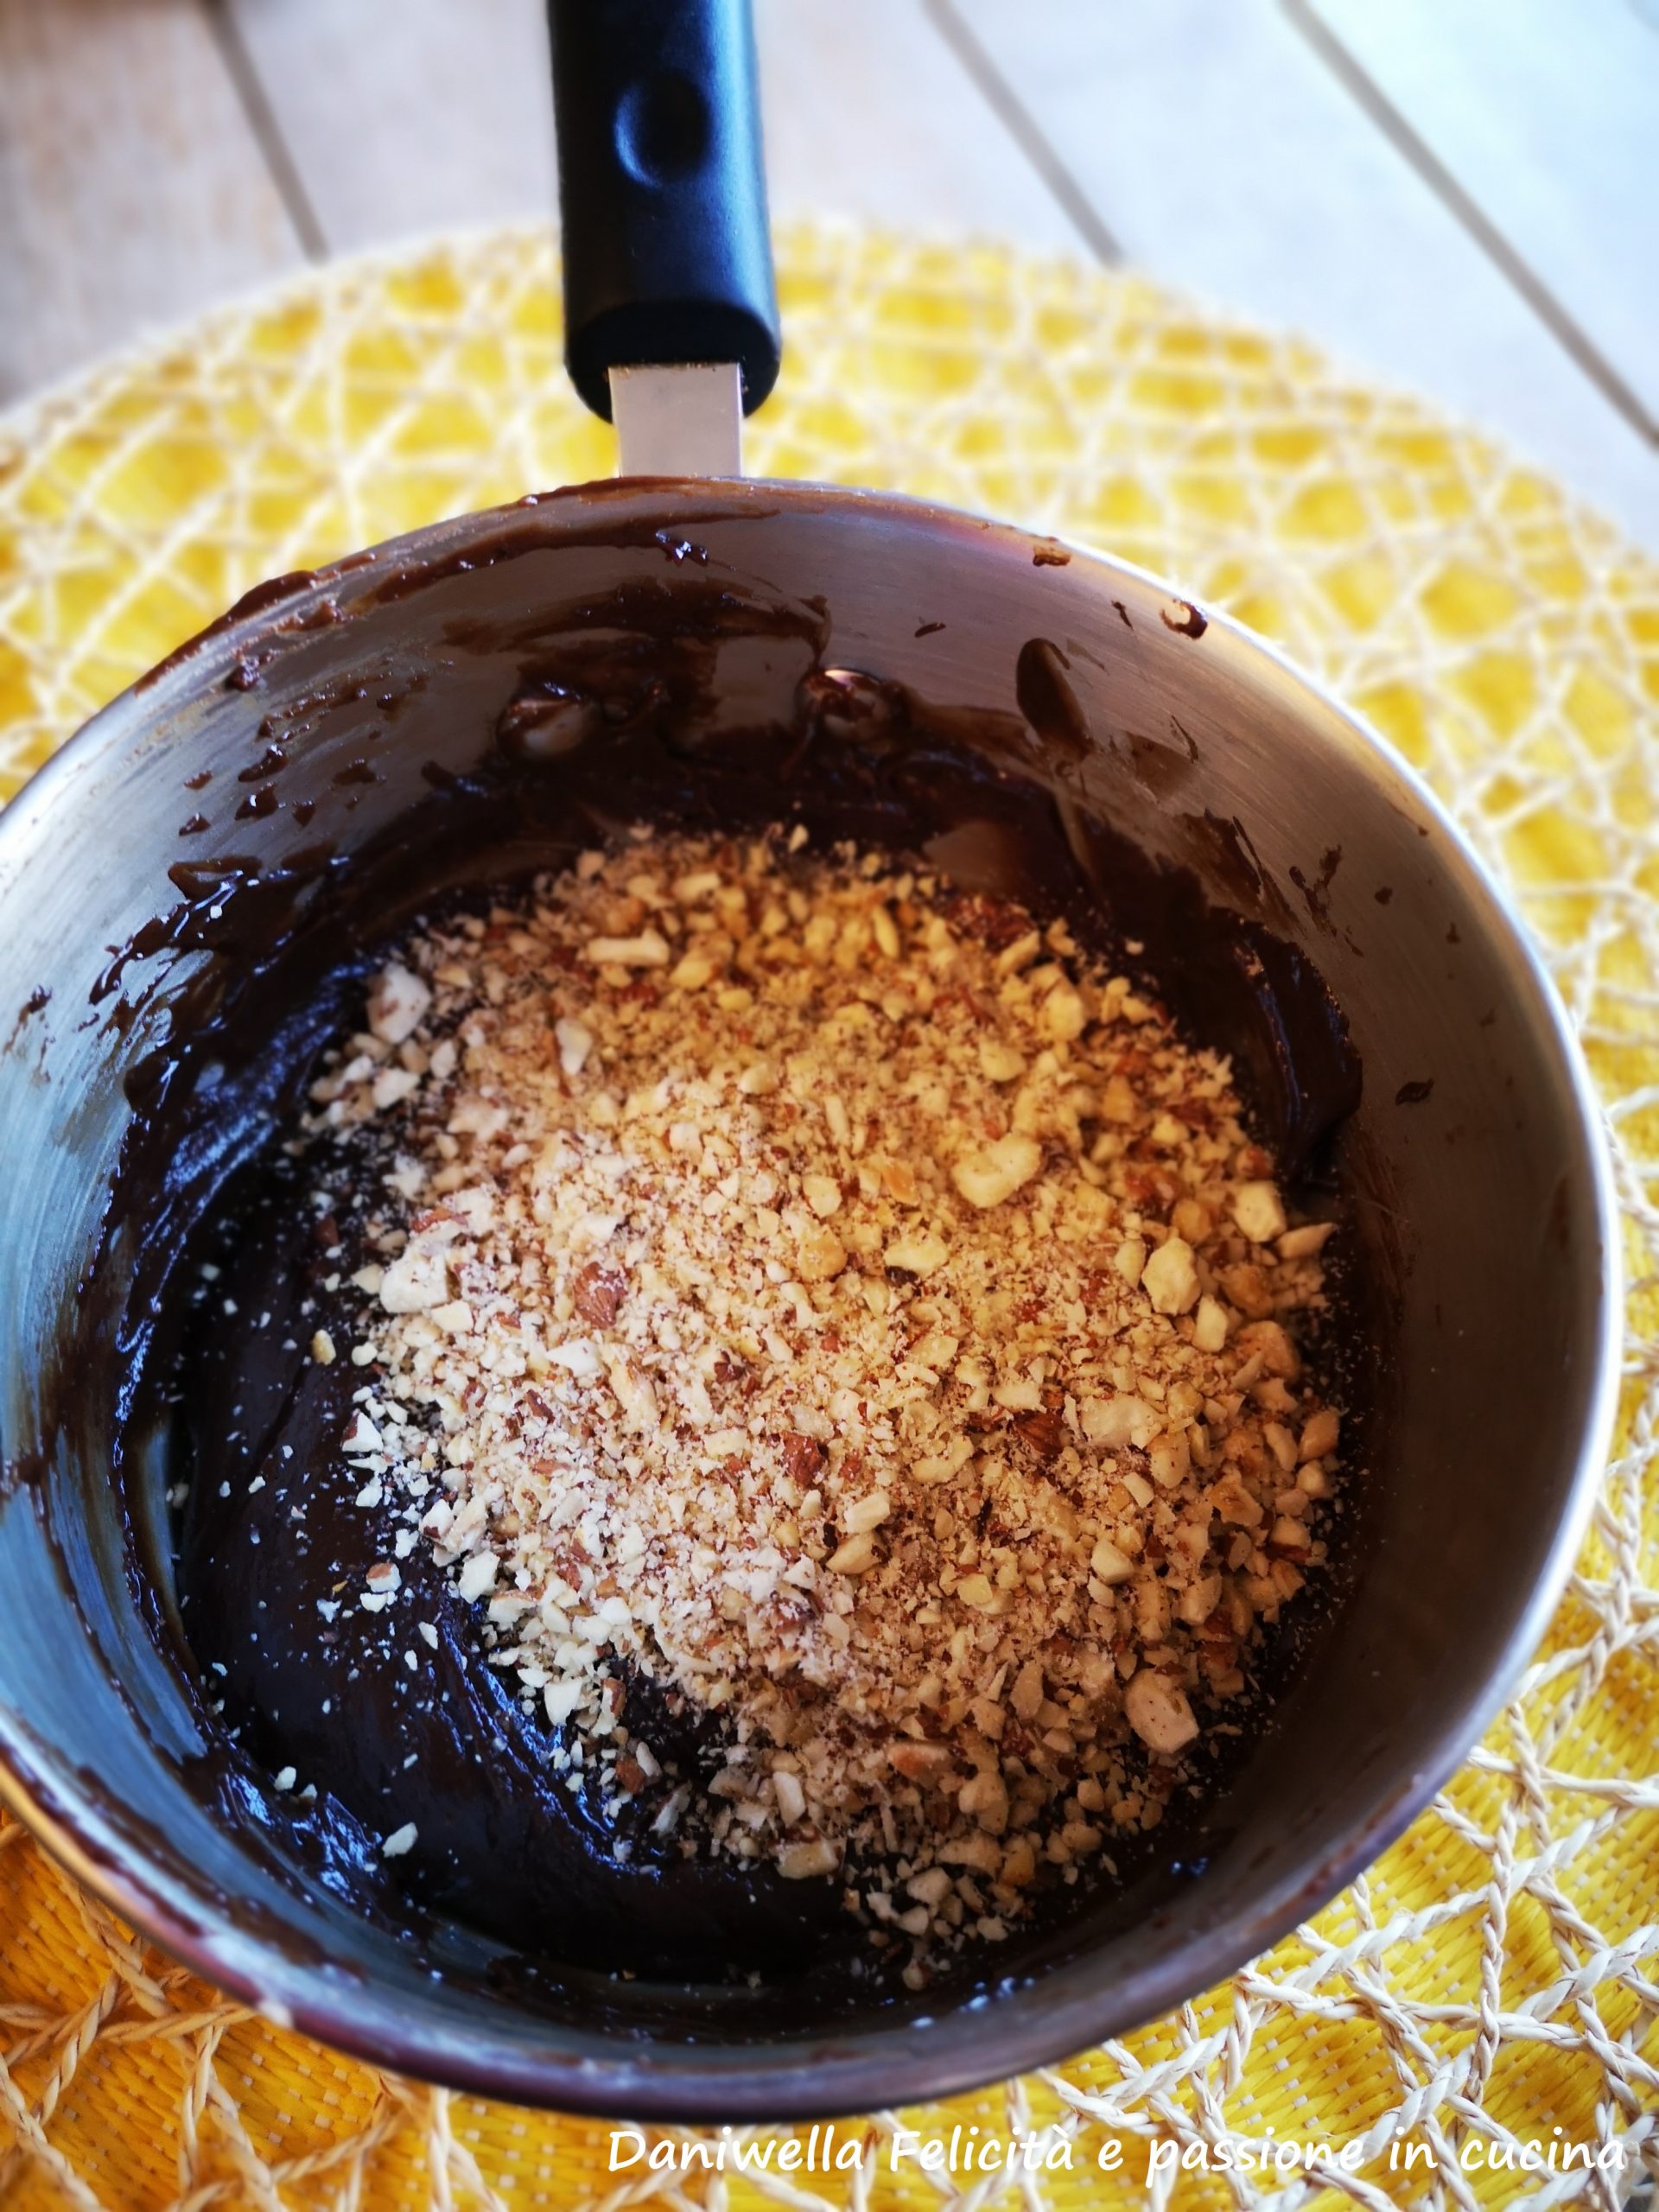 Mettete la panna in un pentolino, appena arriva al bollore togliete dal fuoco. Aggiungete il cioccolato al latte spezzettato eppoi la granella di nocciole.